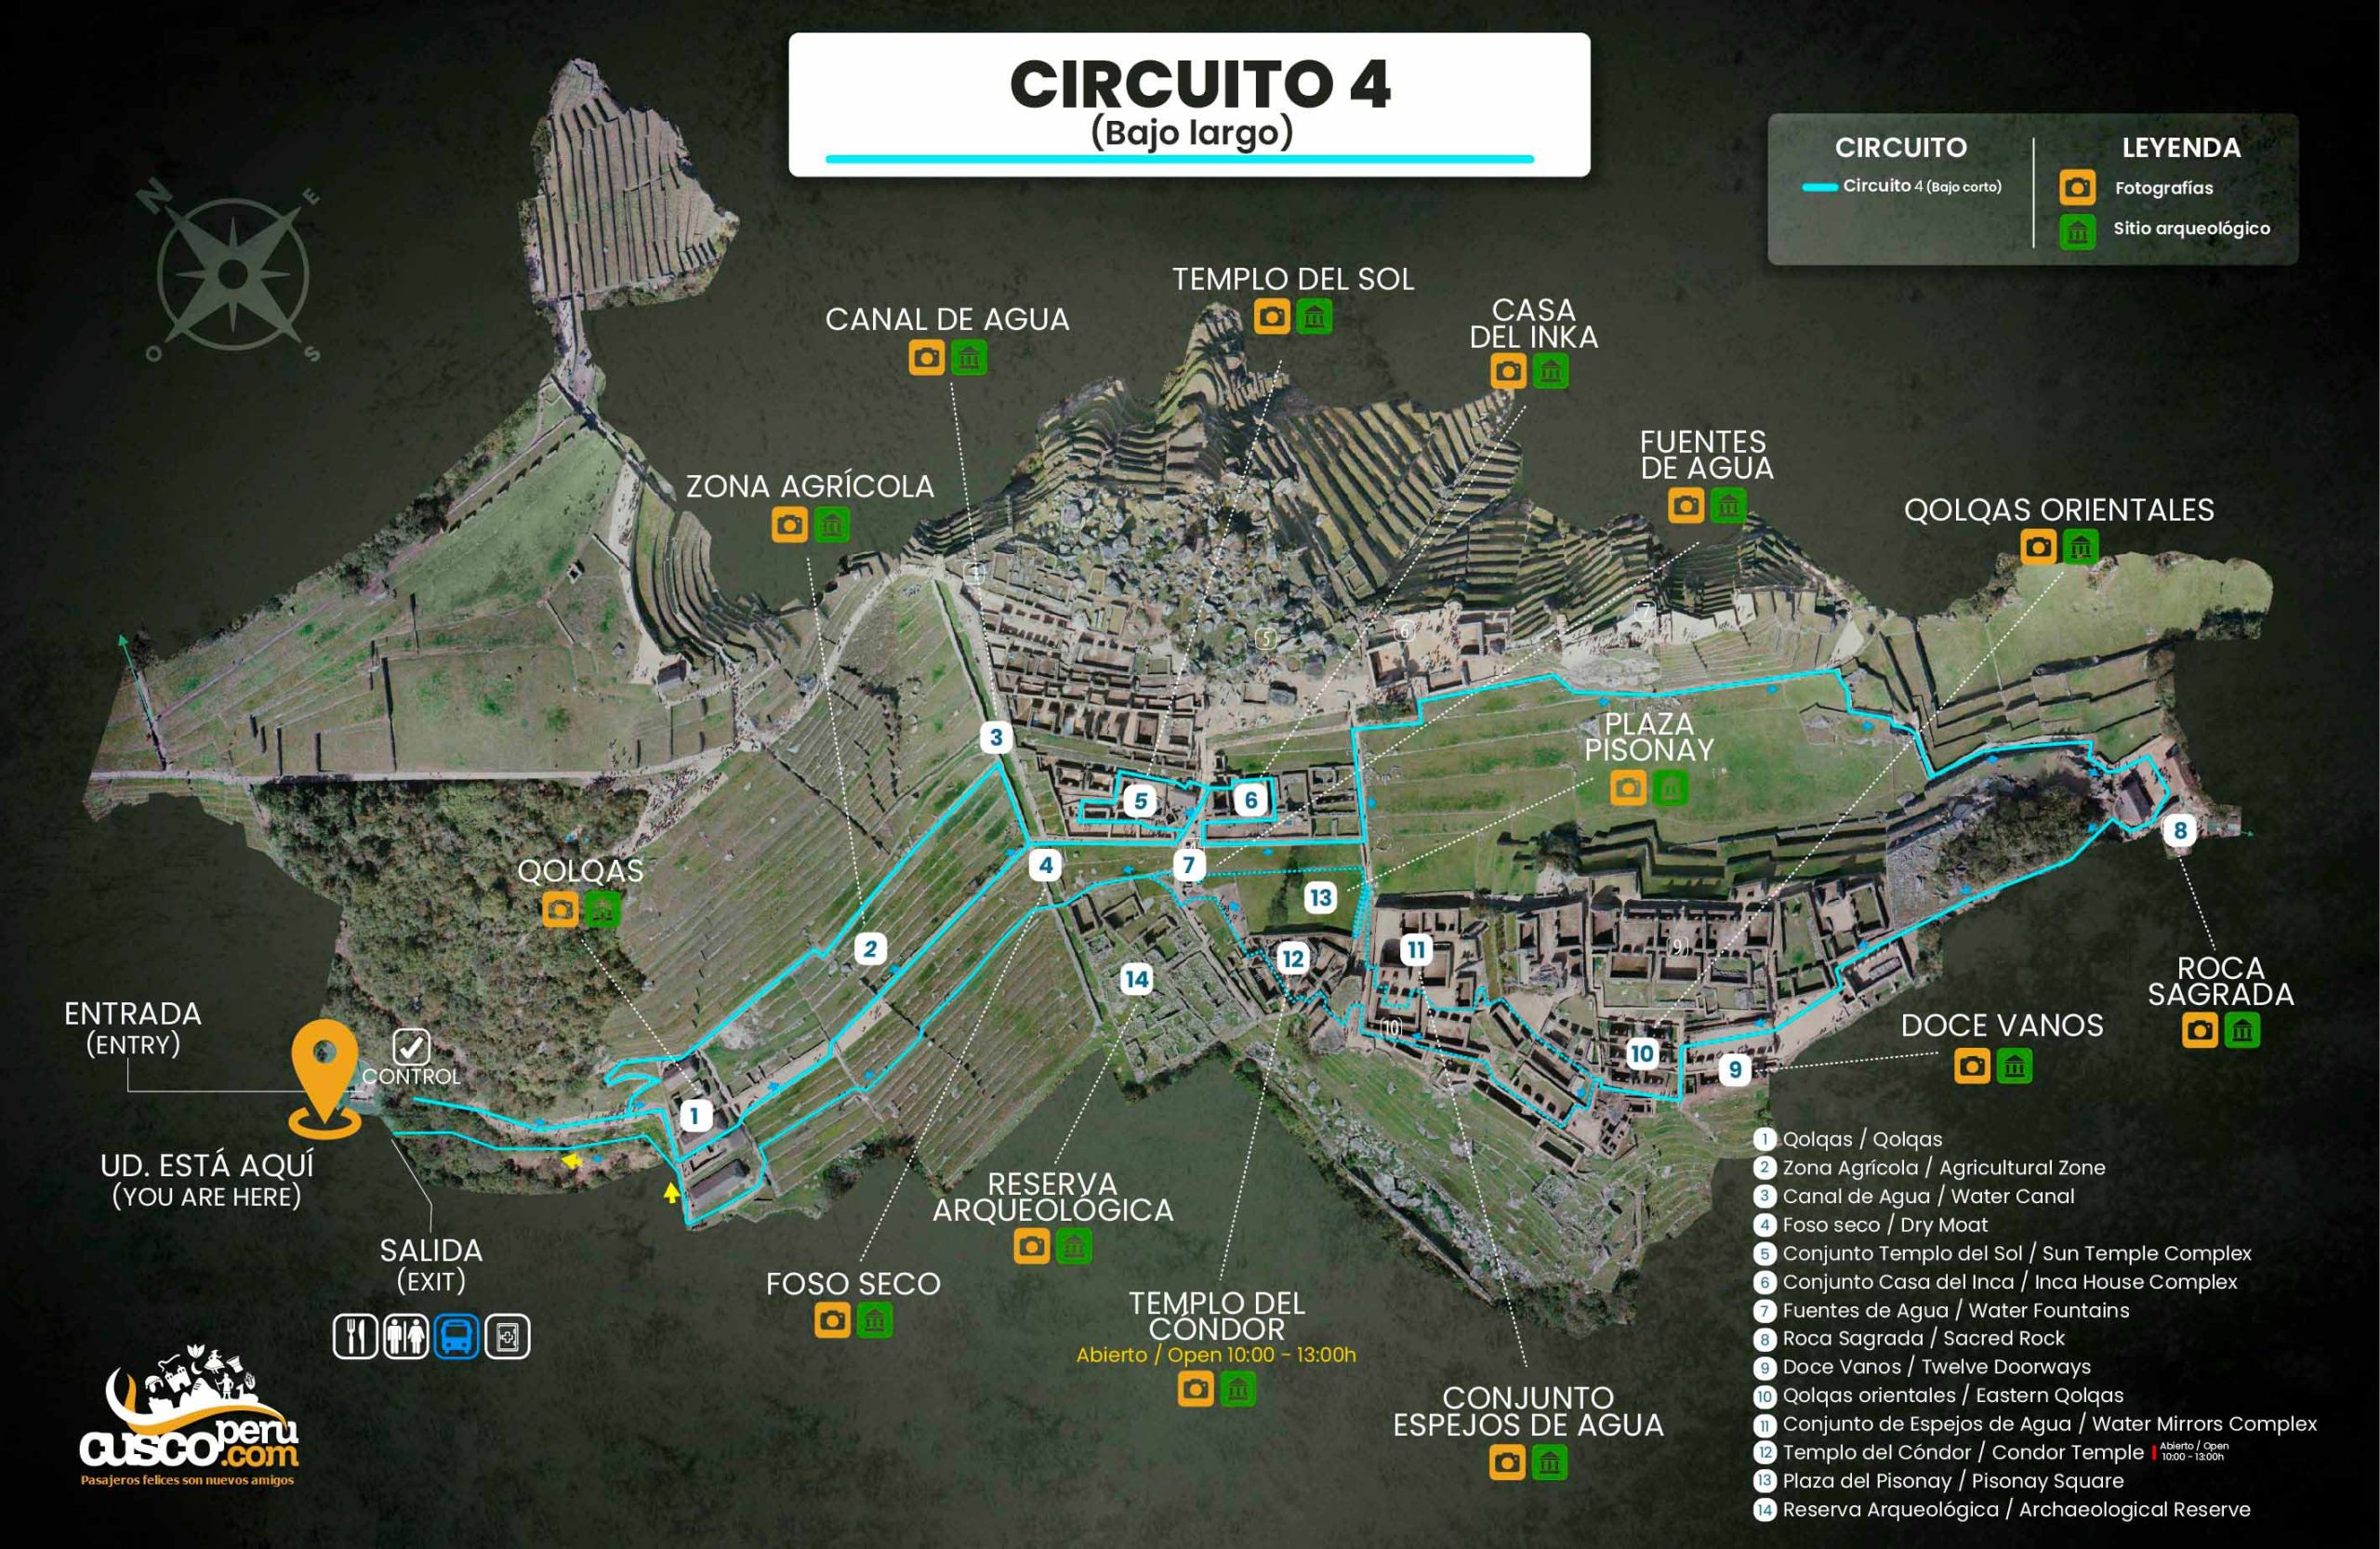 Mapa do Circuito 4 de Machu Picchu. Fonte: CuscoPeru.com